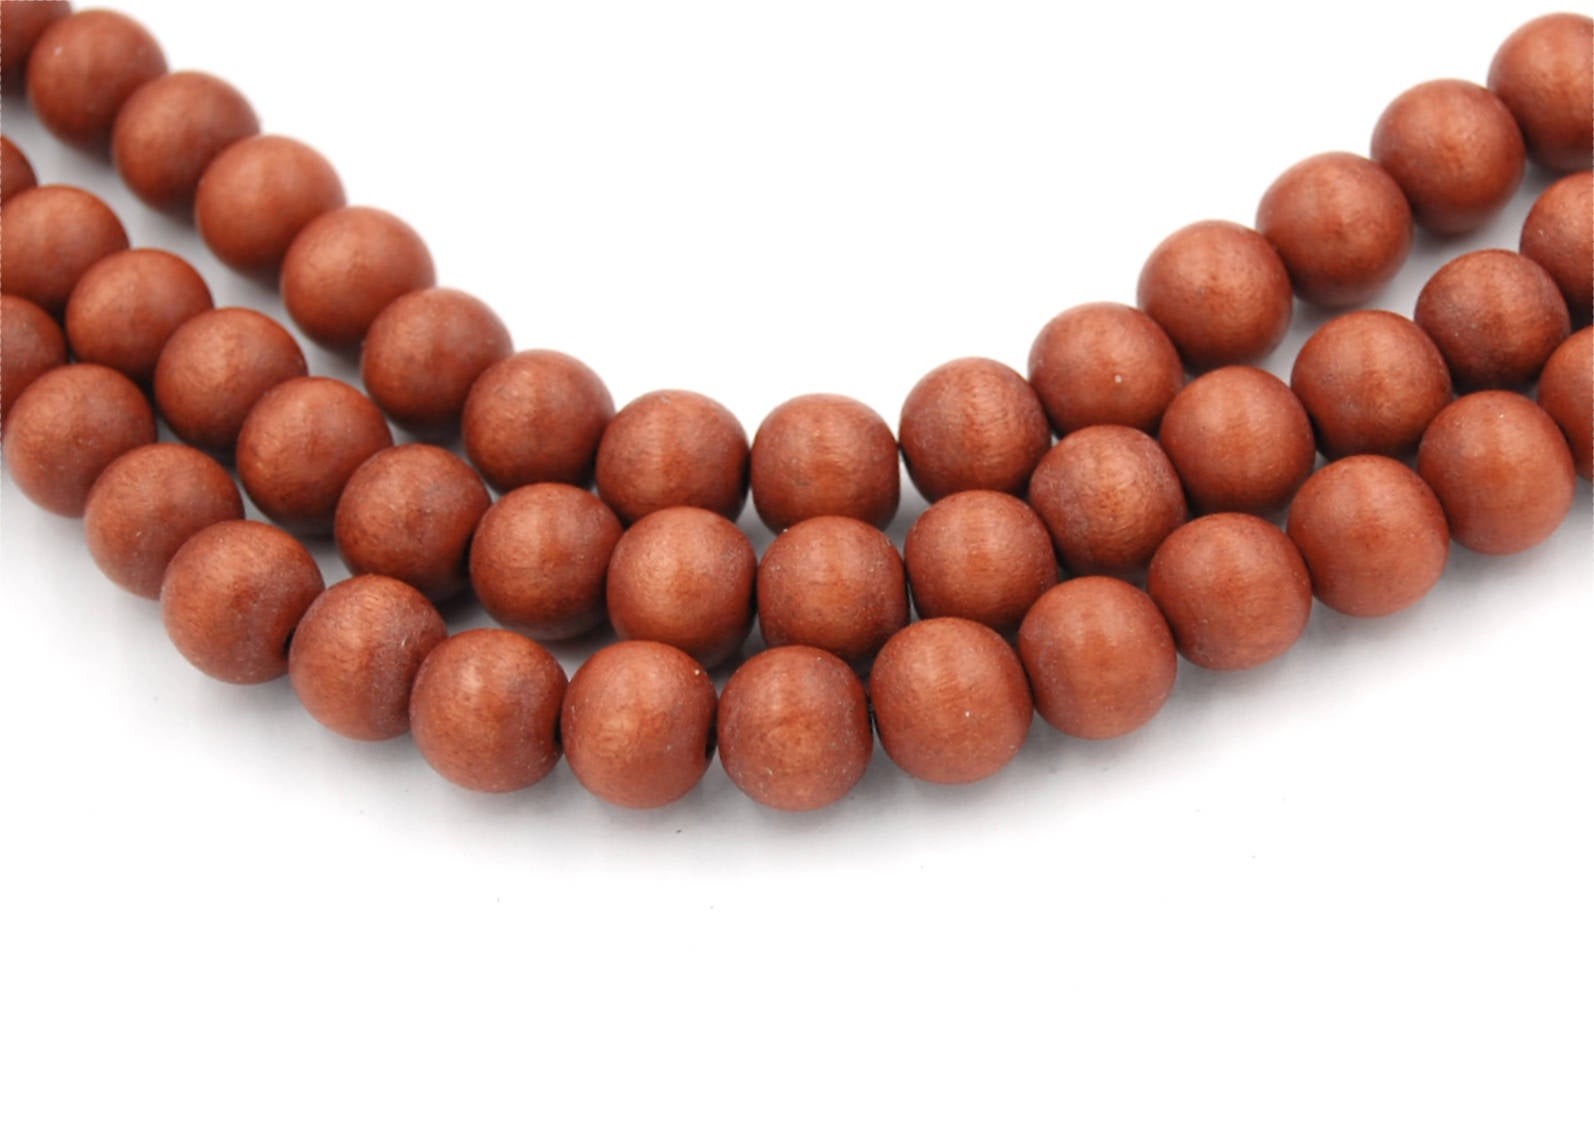 16mm Wholesale Round Dark Brown Wood Beads at CraftySticks